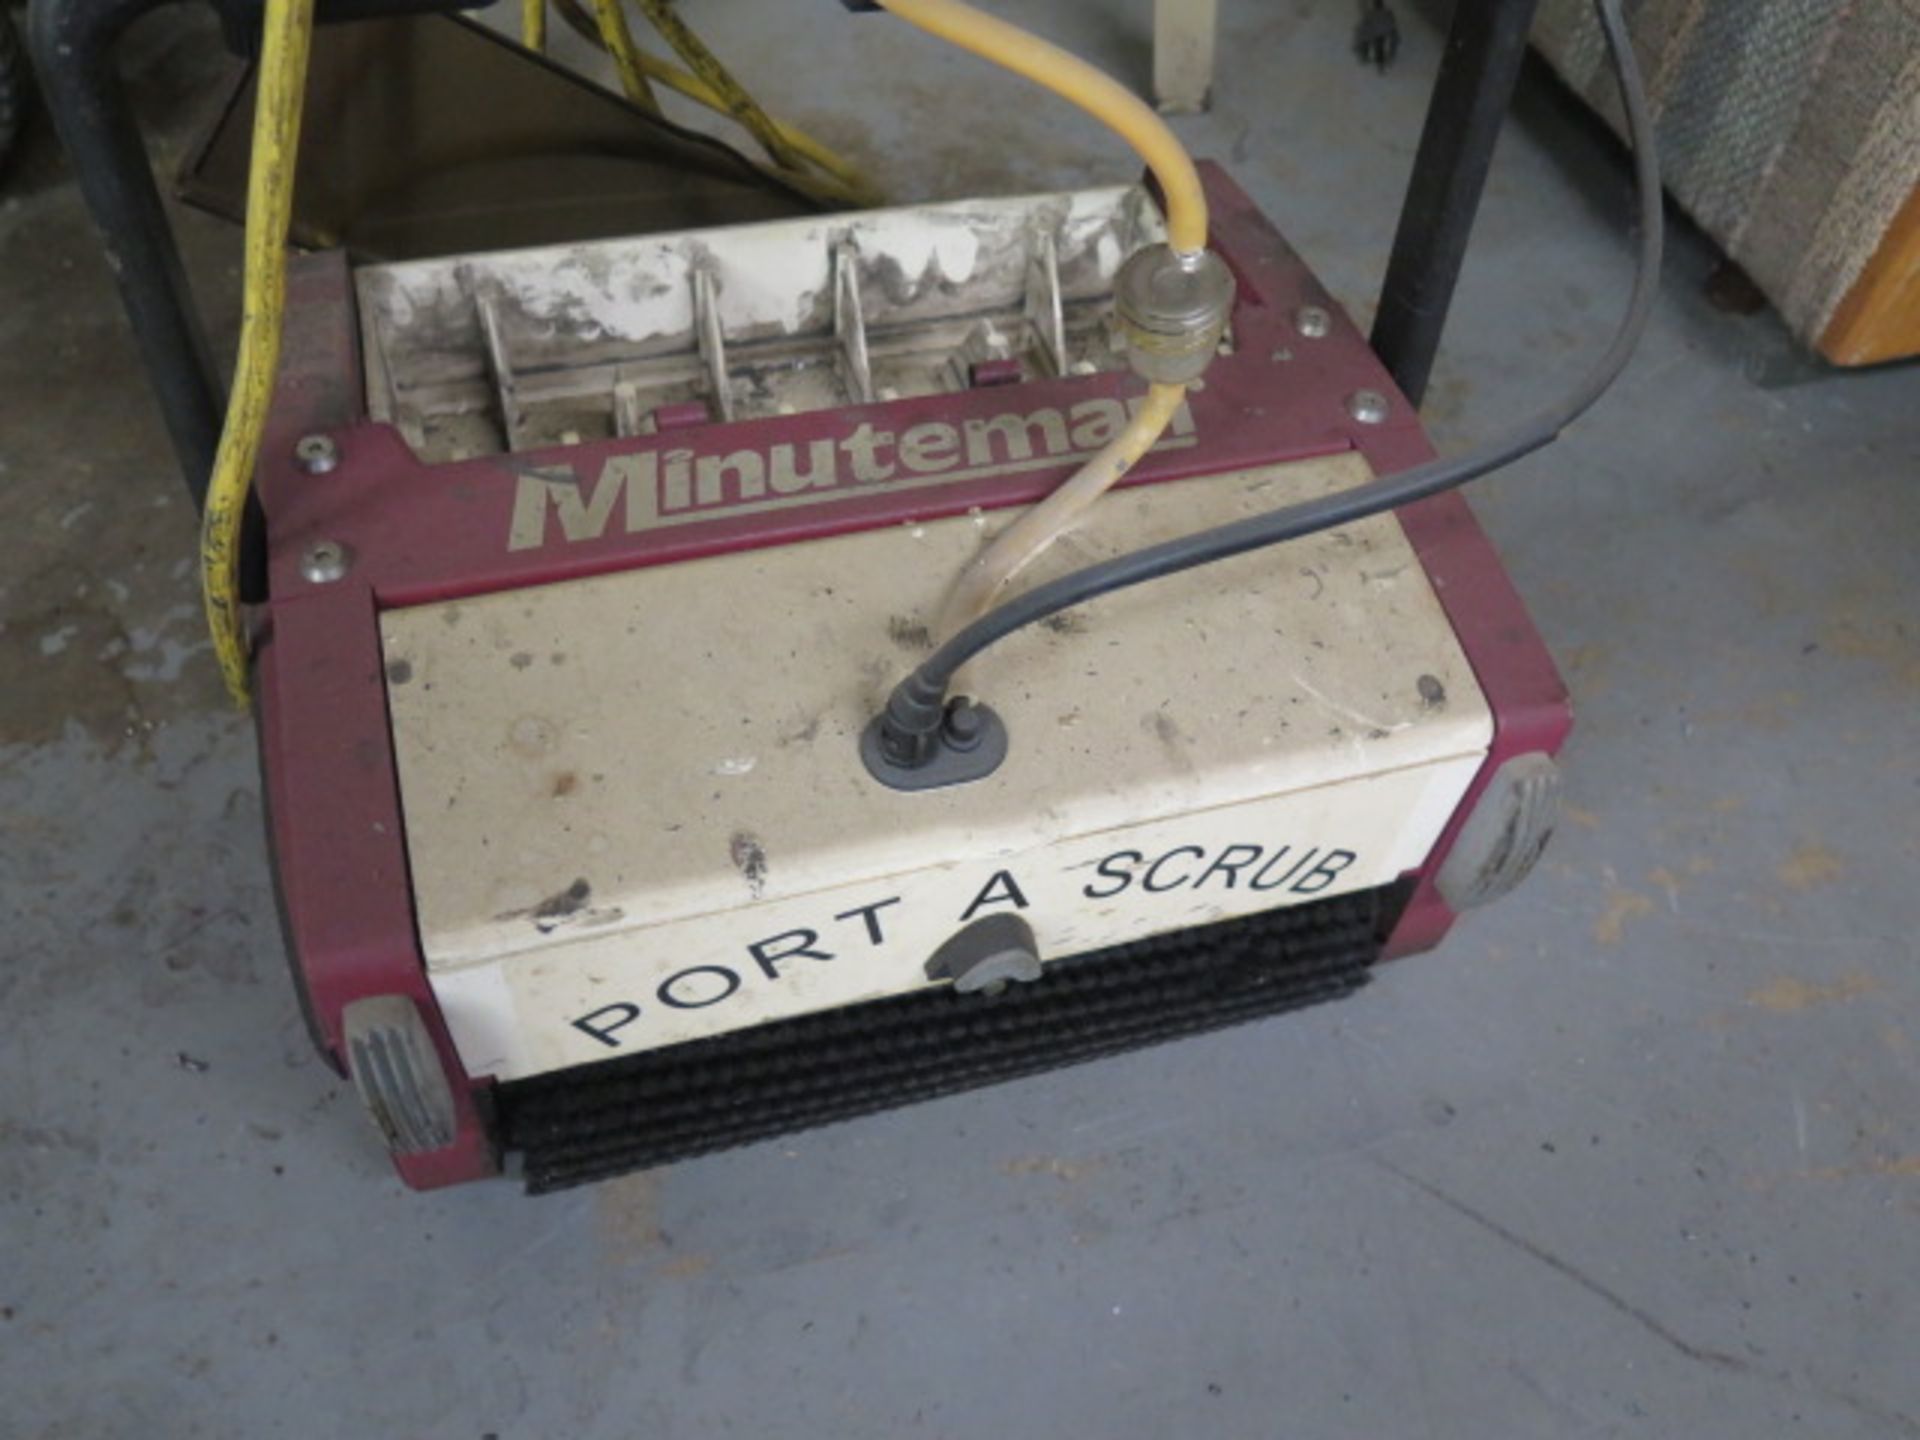 Minuteman Floor Scrubber (SOLD AS-IS - NO WARRANTY) - Image 2 of 2